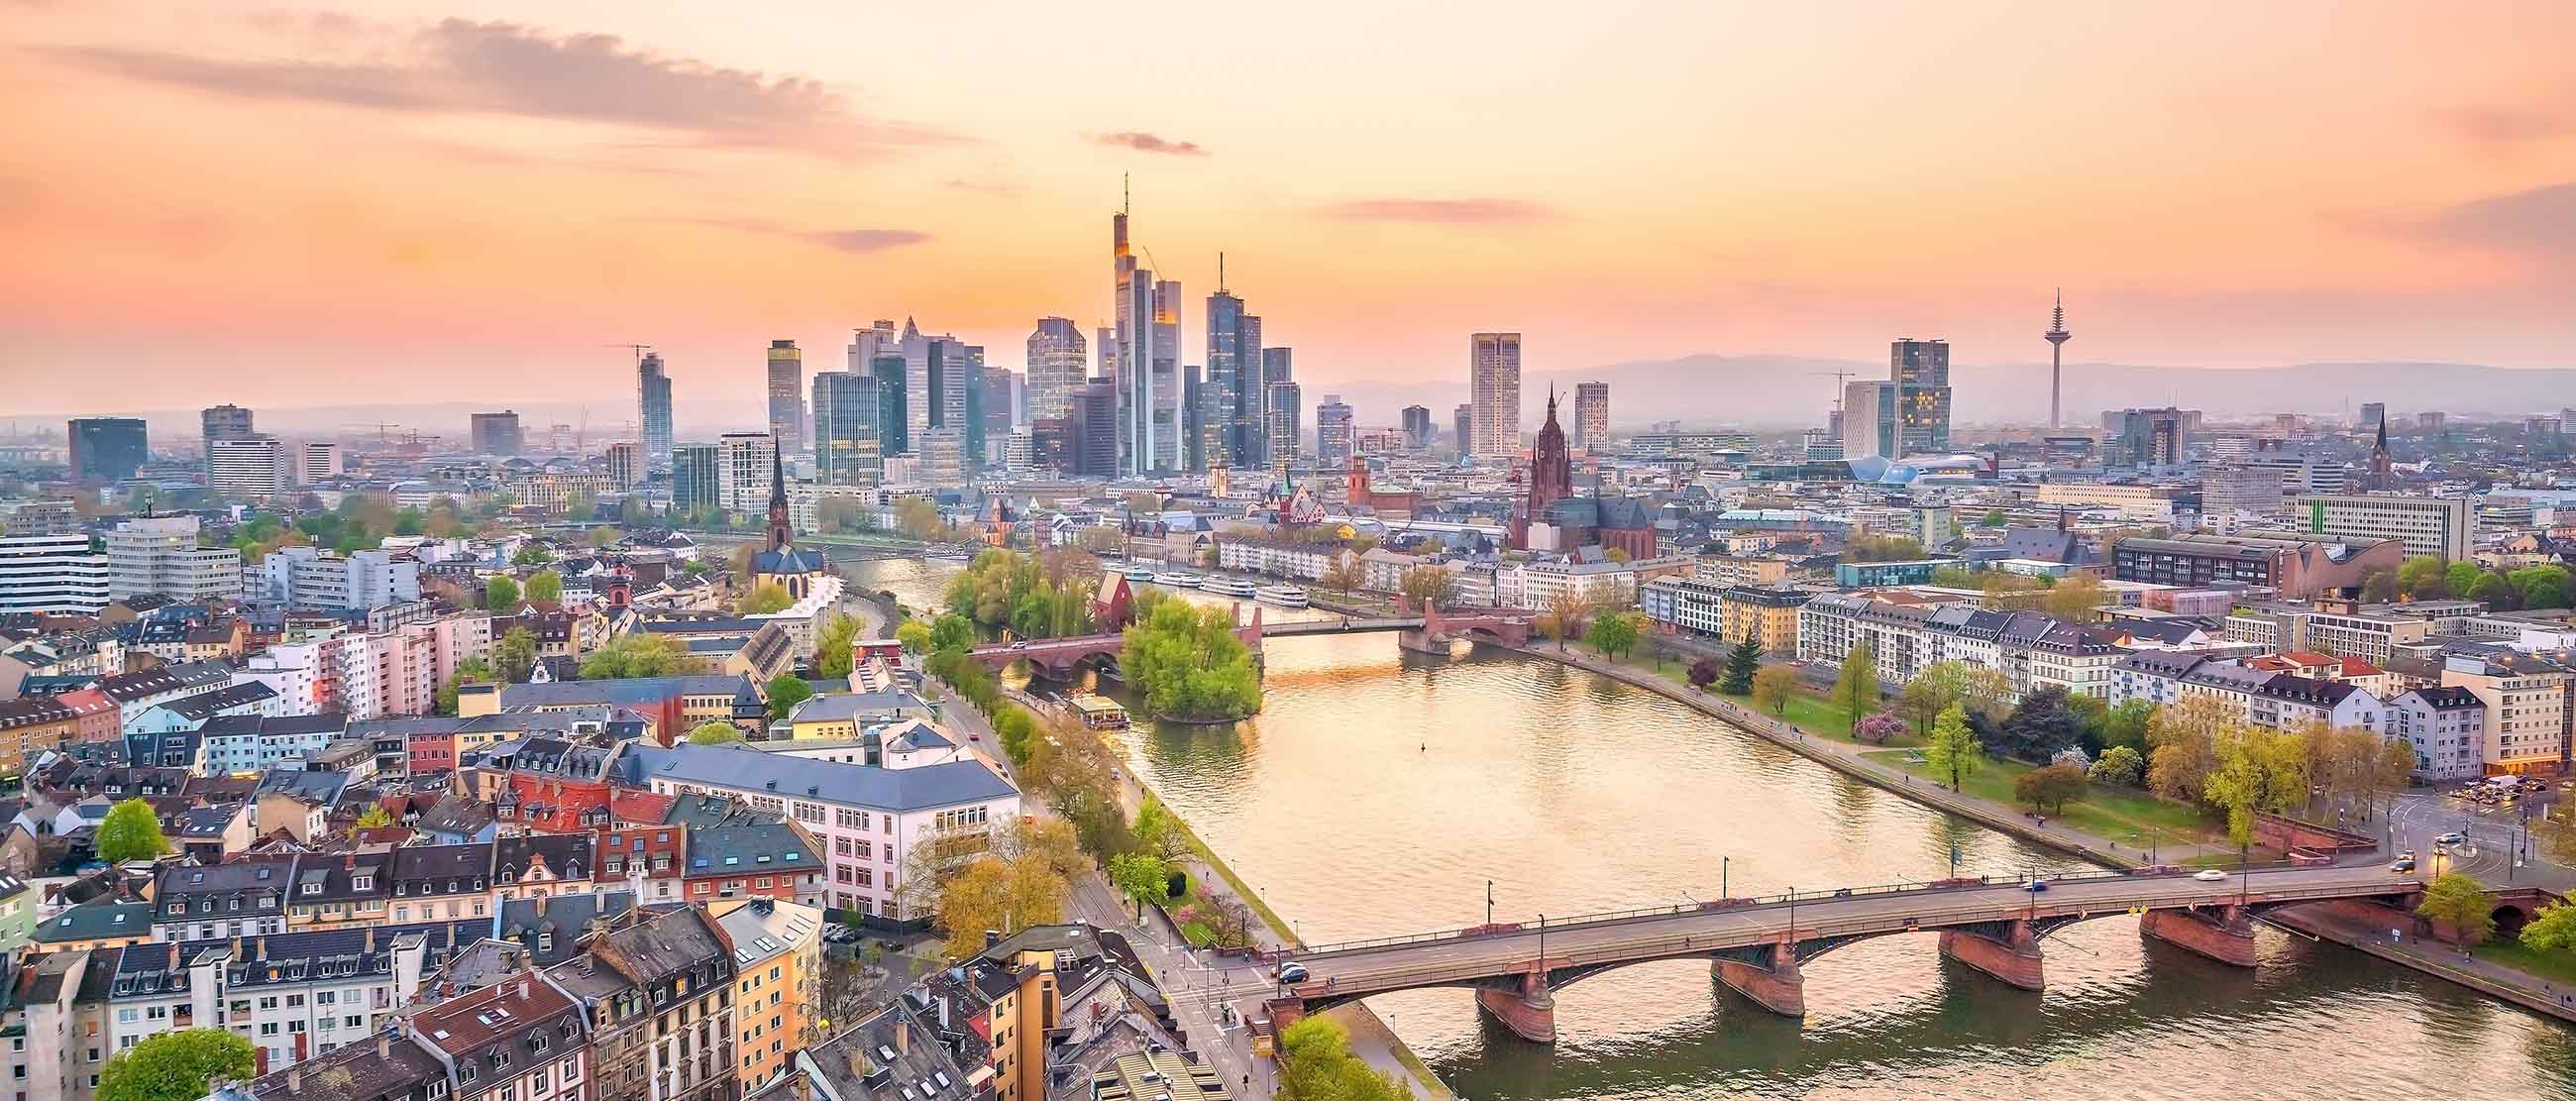 Quý khách nên khám phá Frankfurt vào tháng 4 - tháng 9